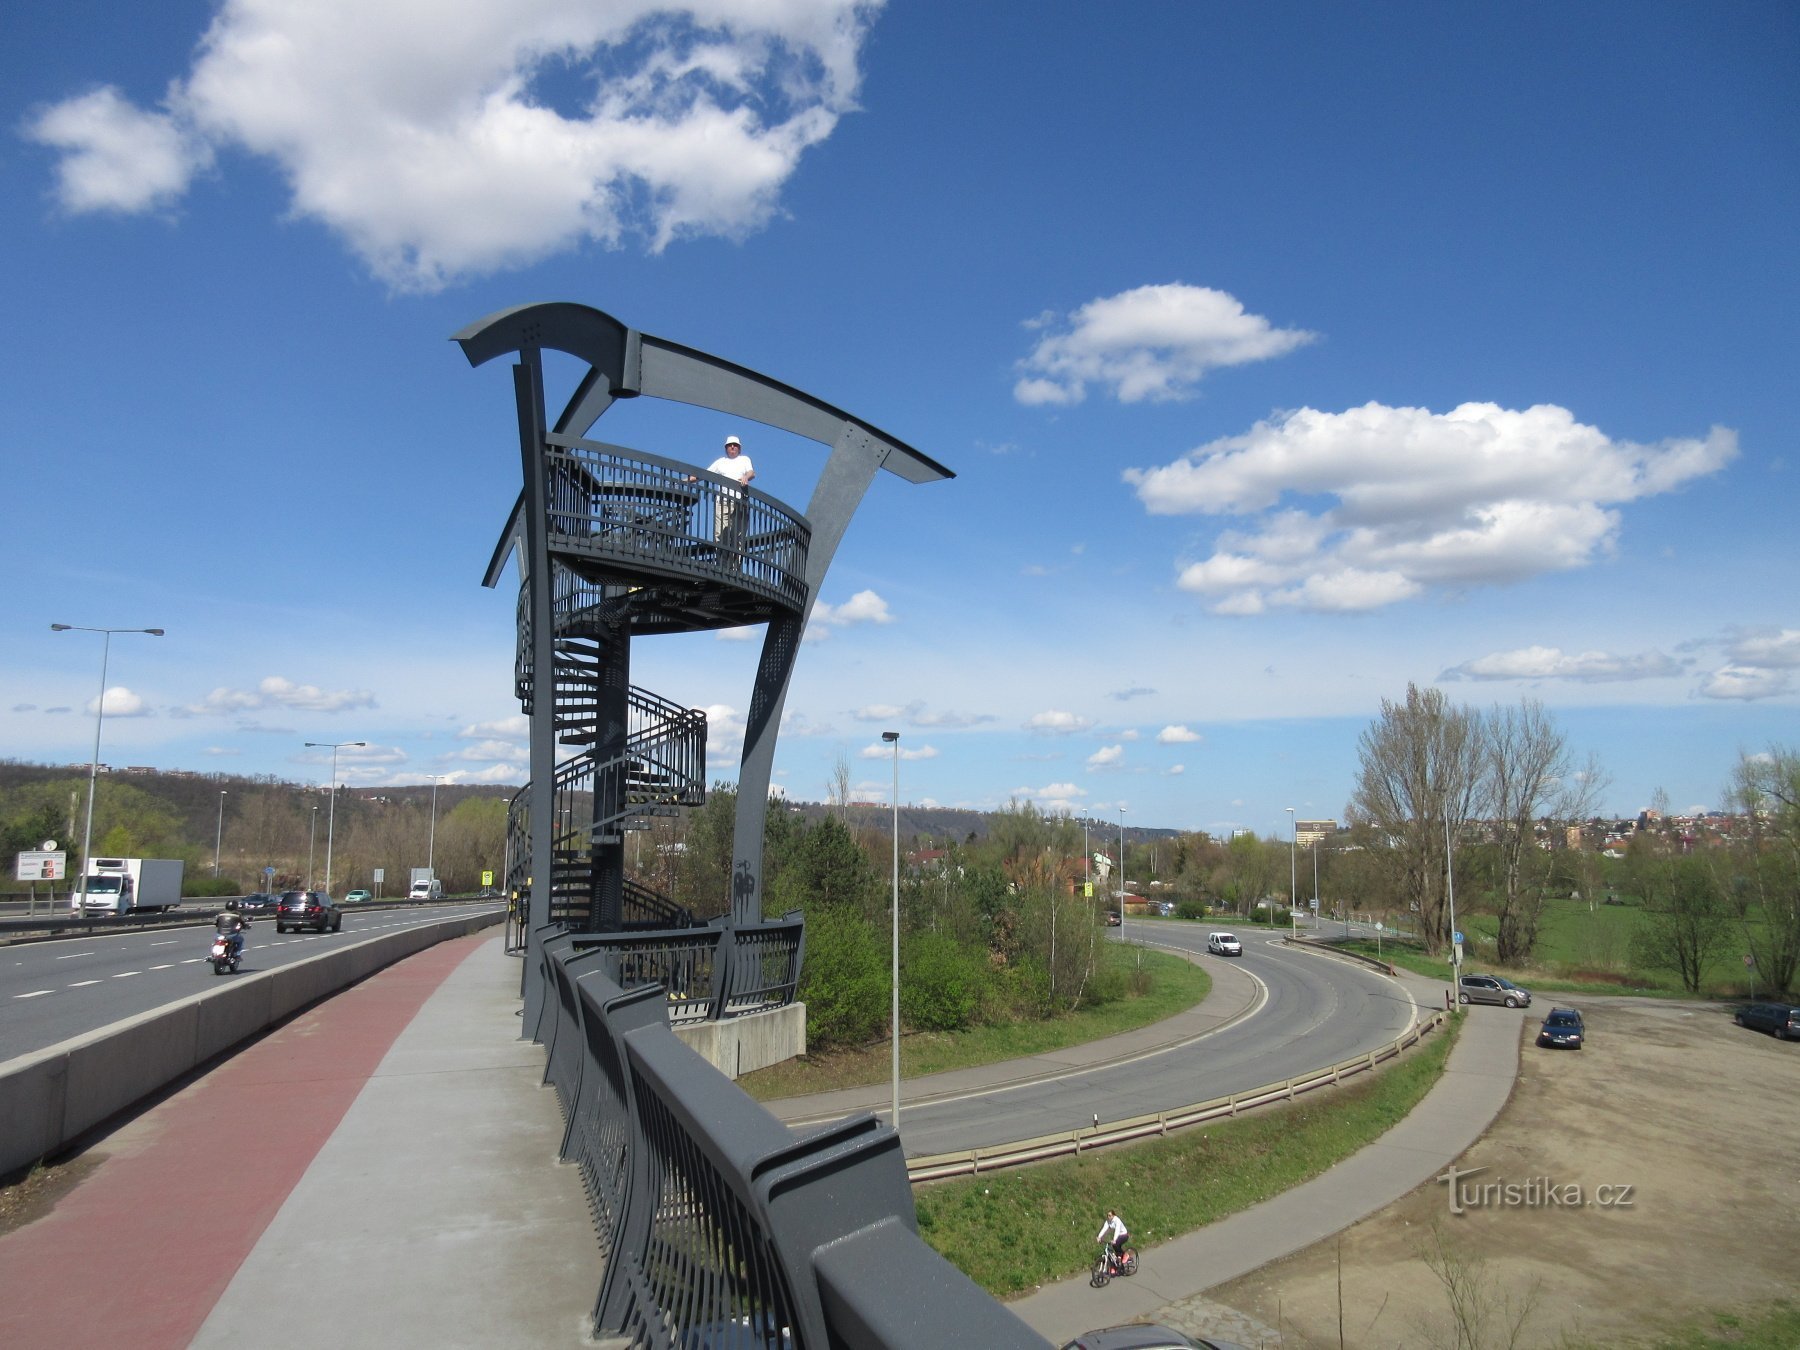 Lahovice - torres de observação da ponte Lahovice e a confluência dos rios Berounka e Vltava